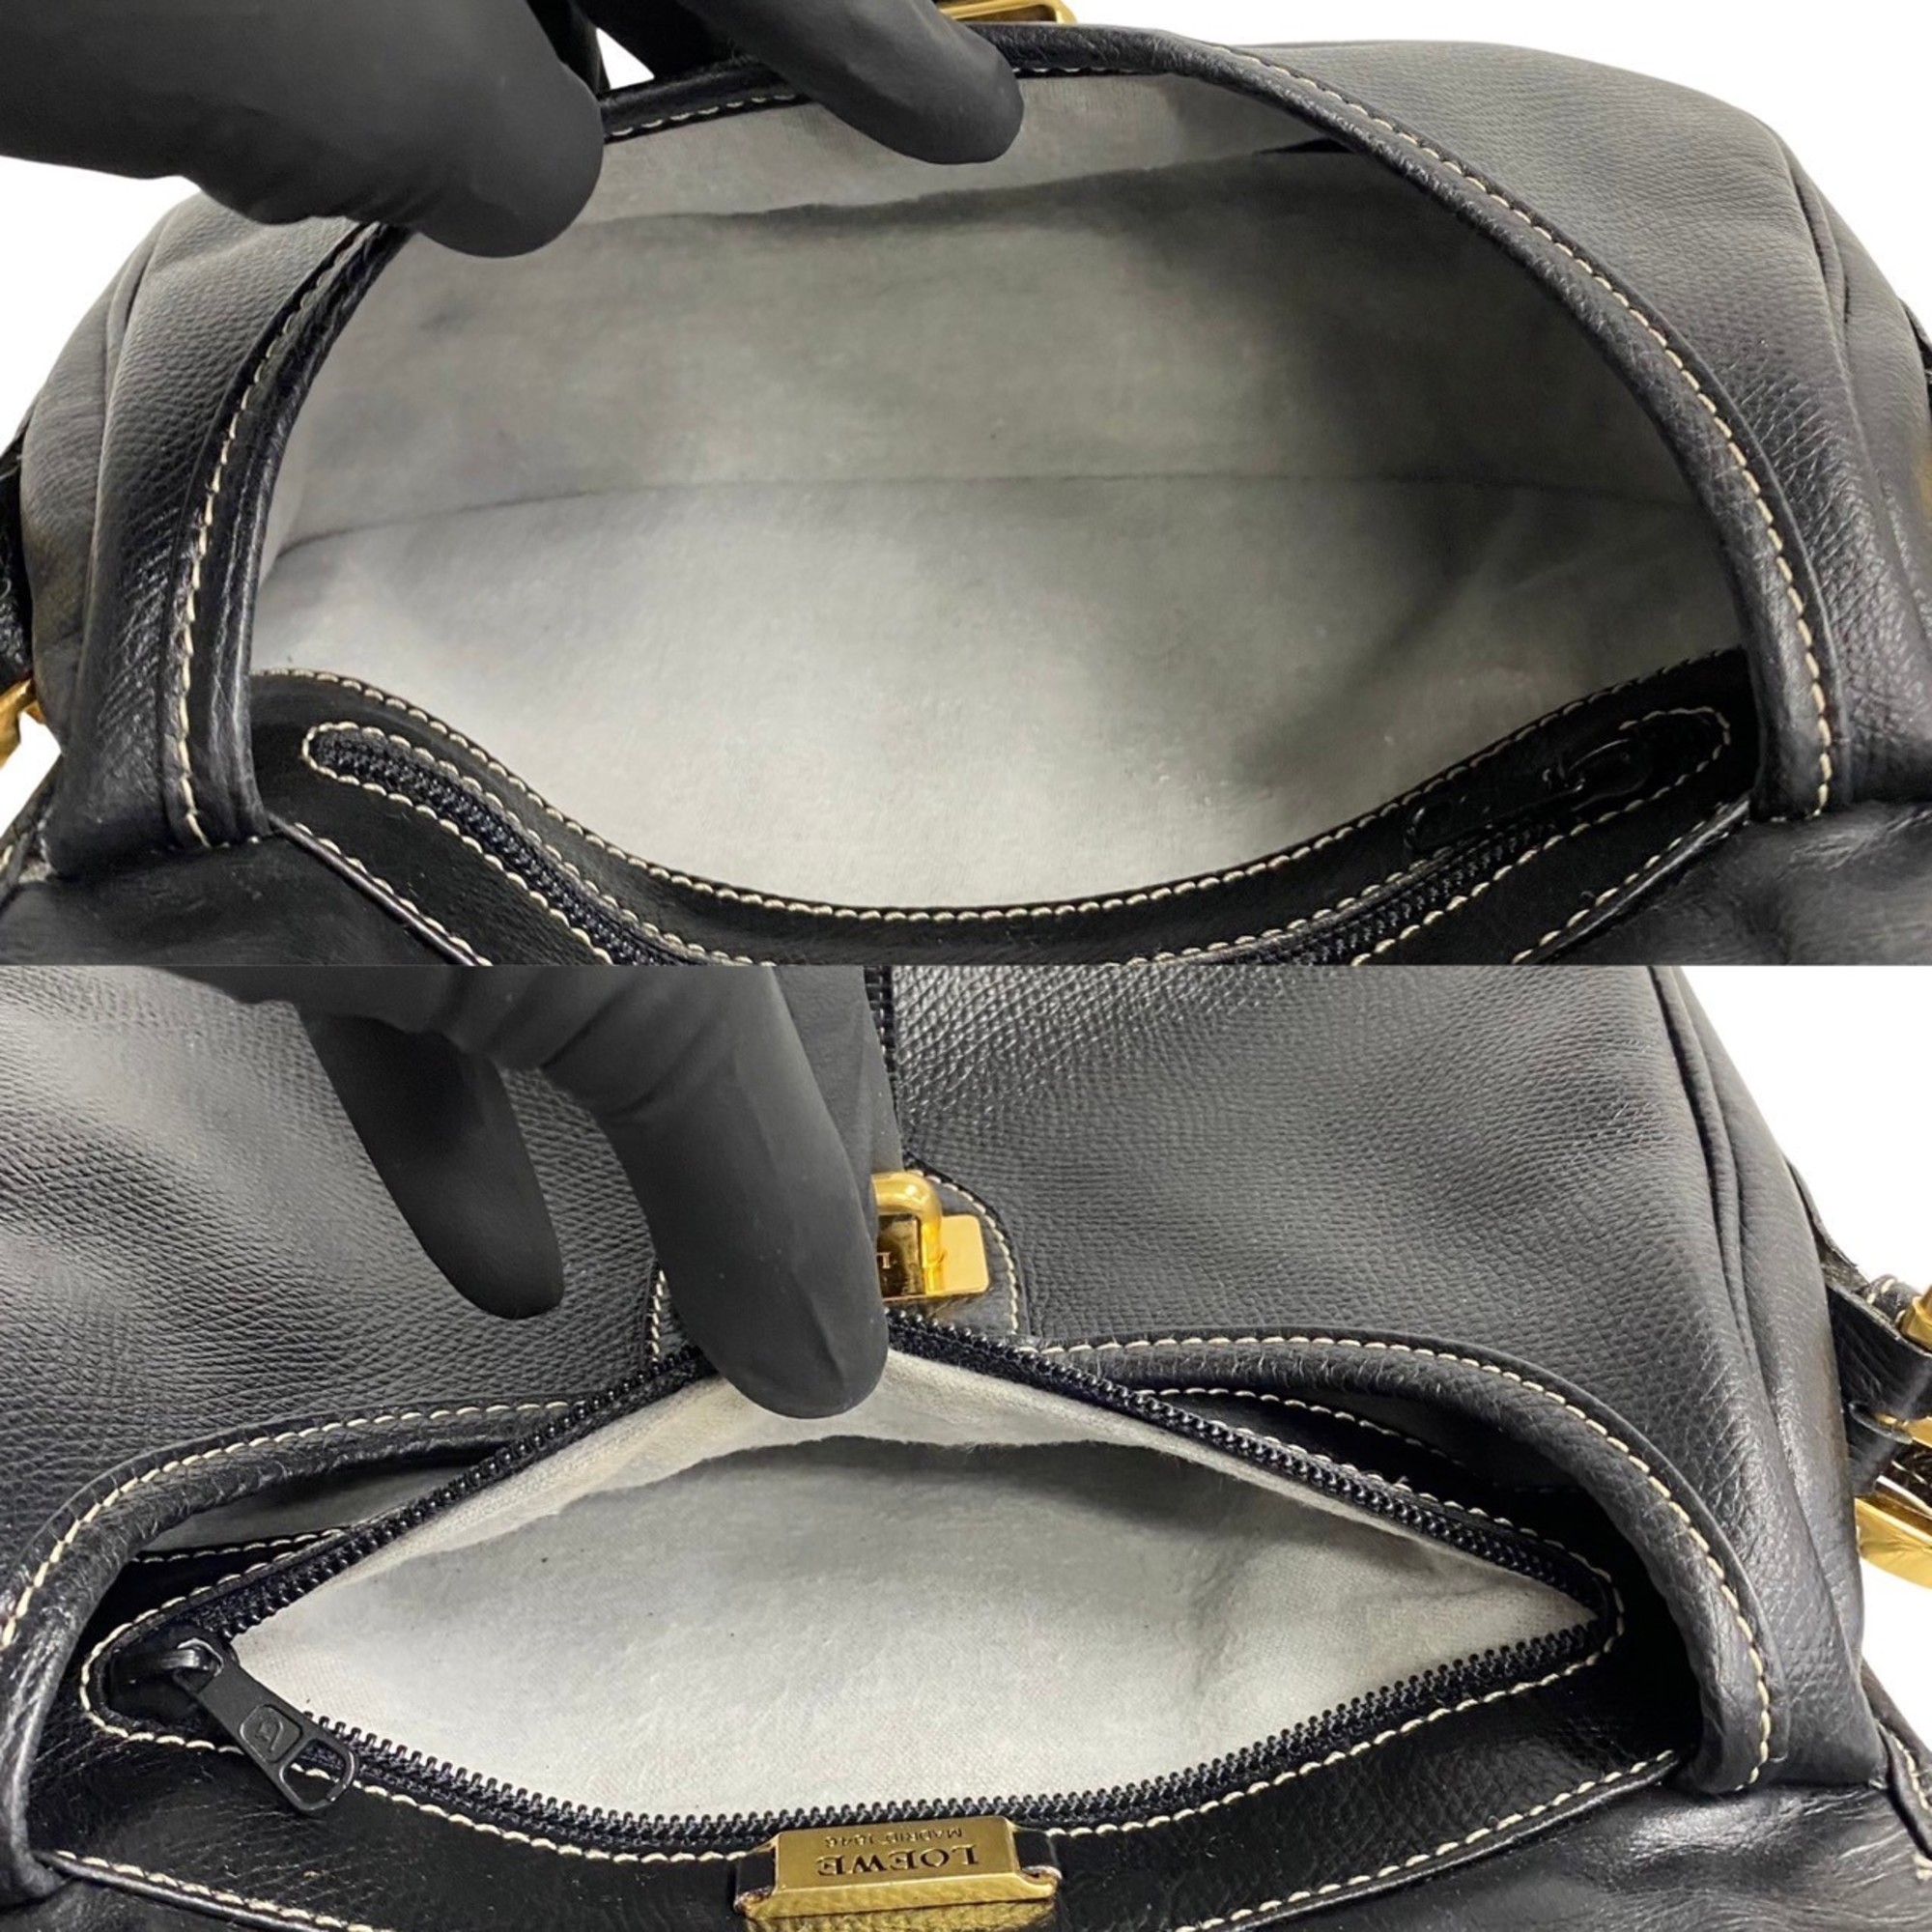 LOEWE Anagram Leather Stitched Shoulder Bag Pochette Sacoche Black 64880